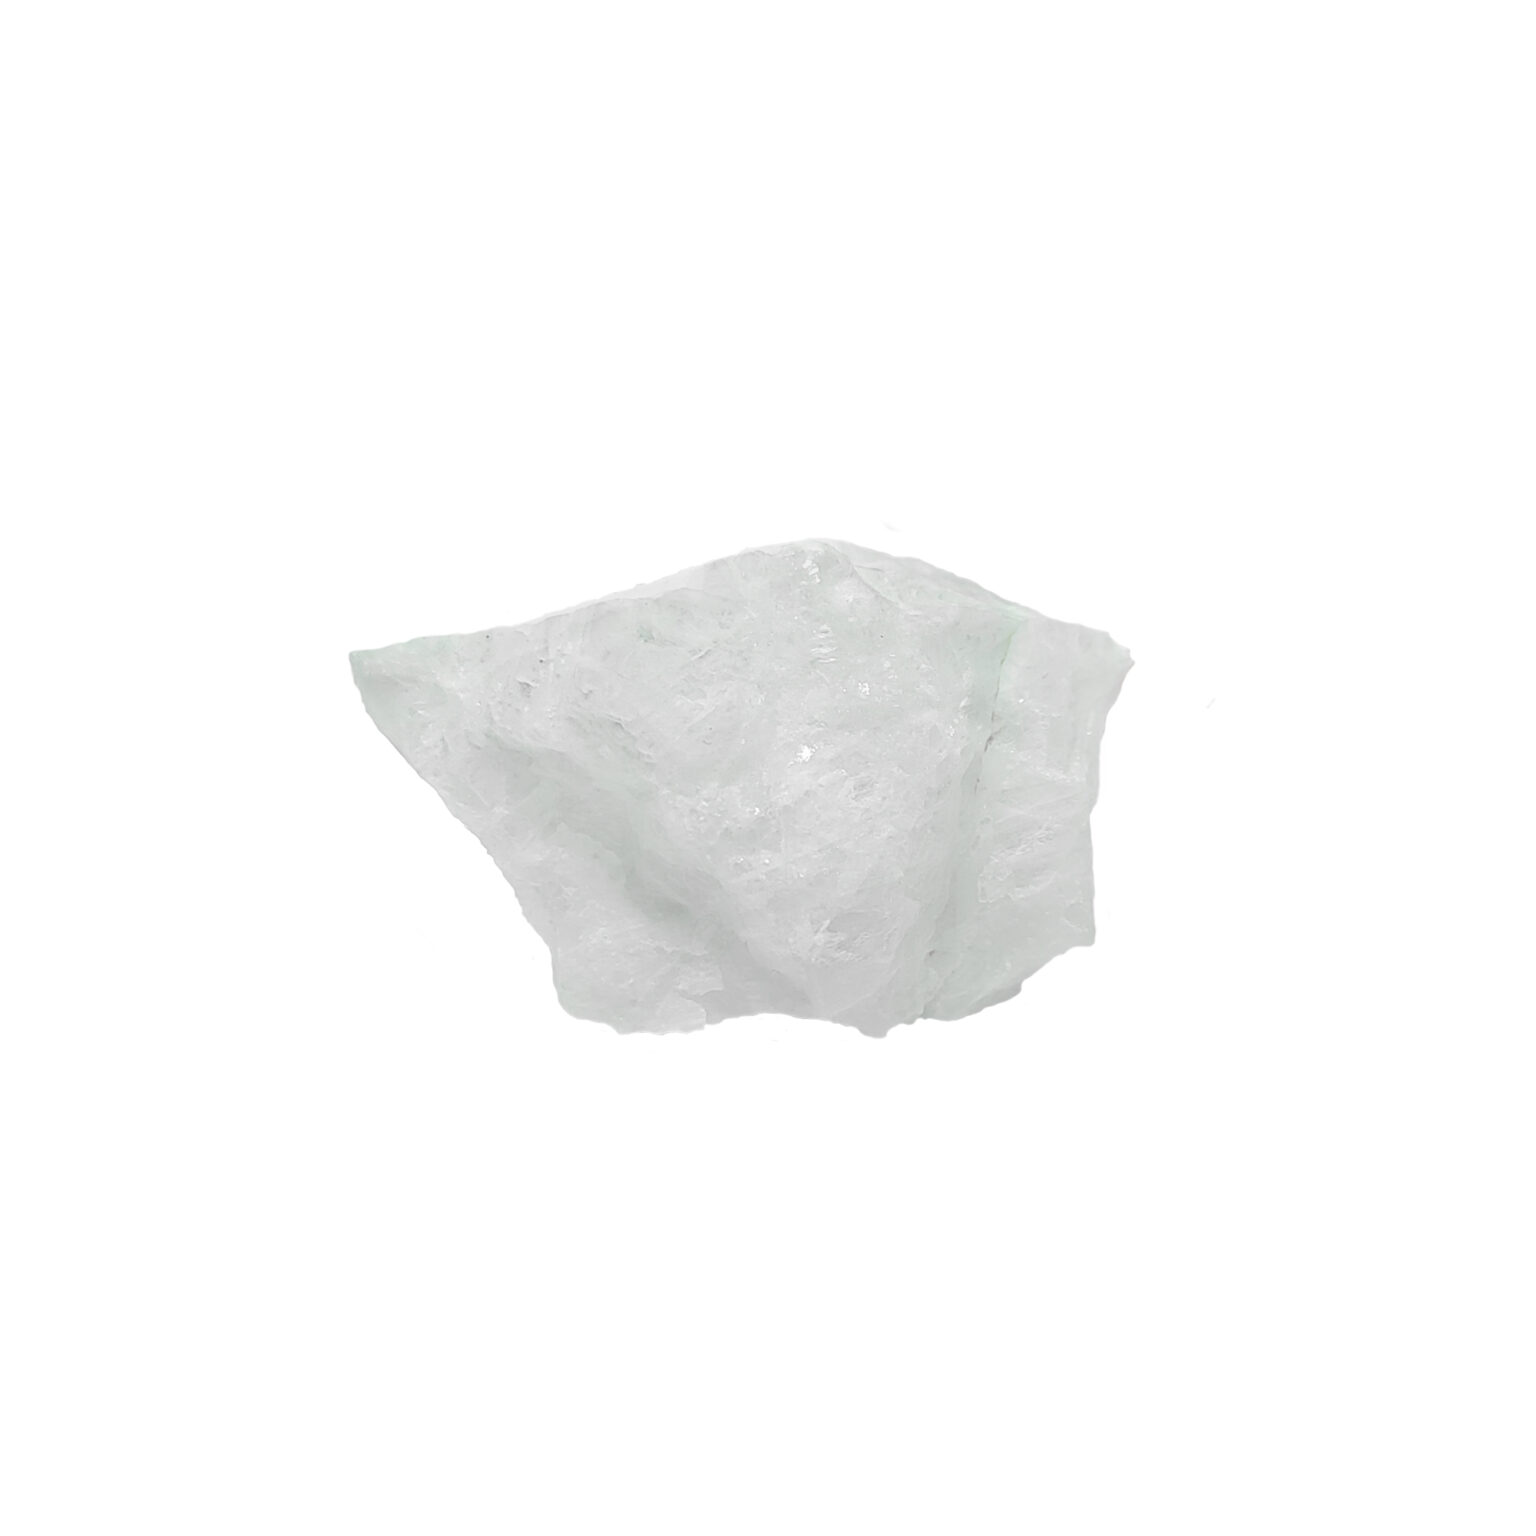 Strahlend weißer Baryt Kristall in seiner rohen Form.